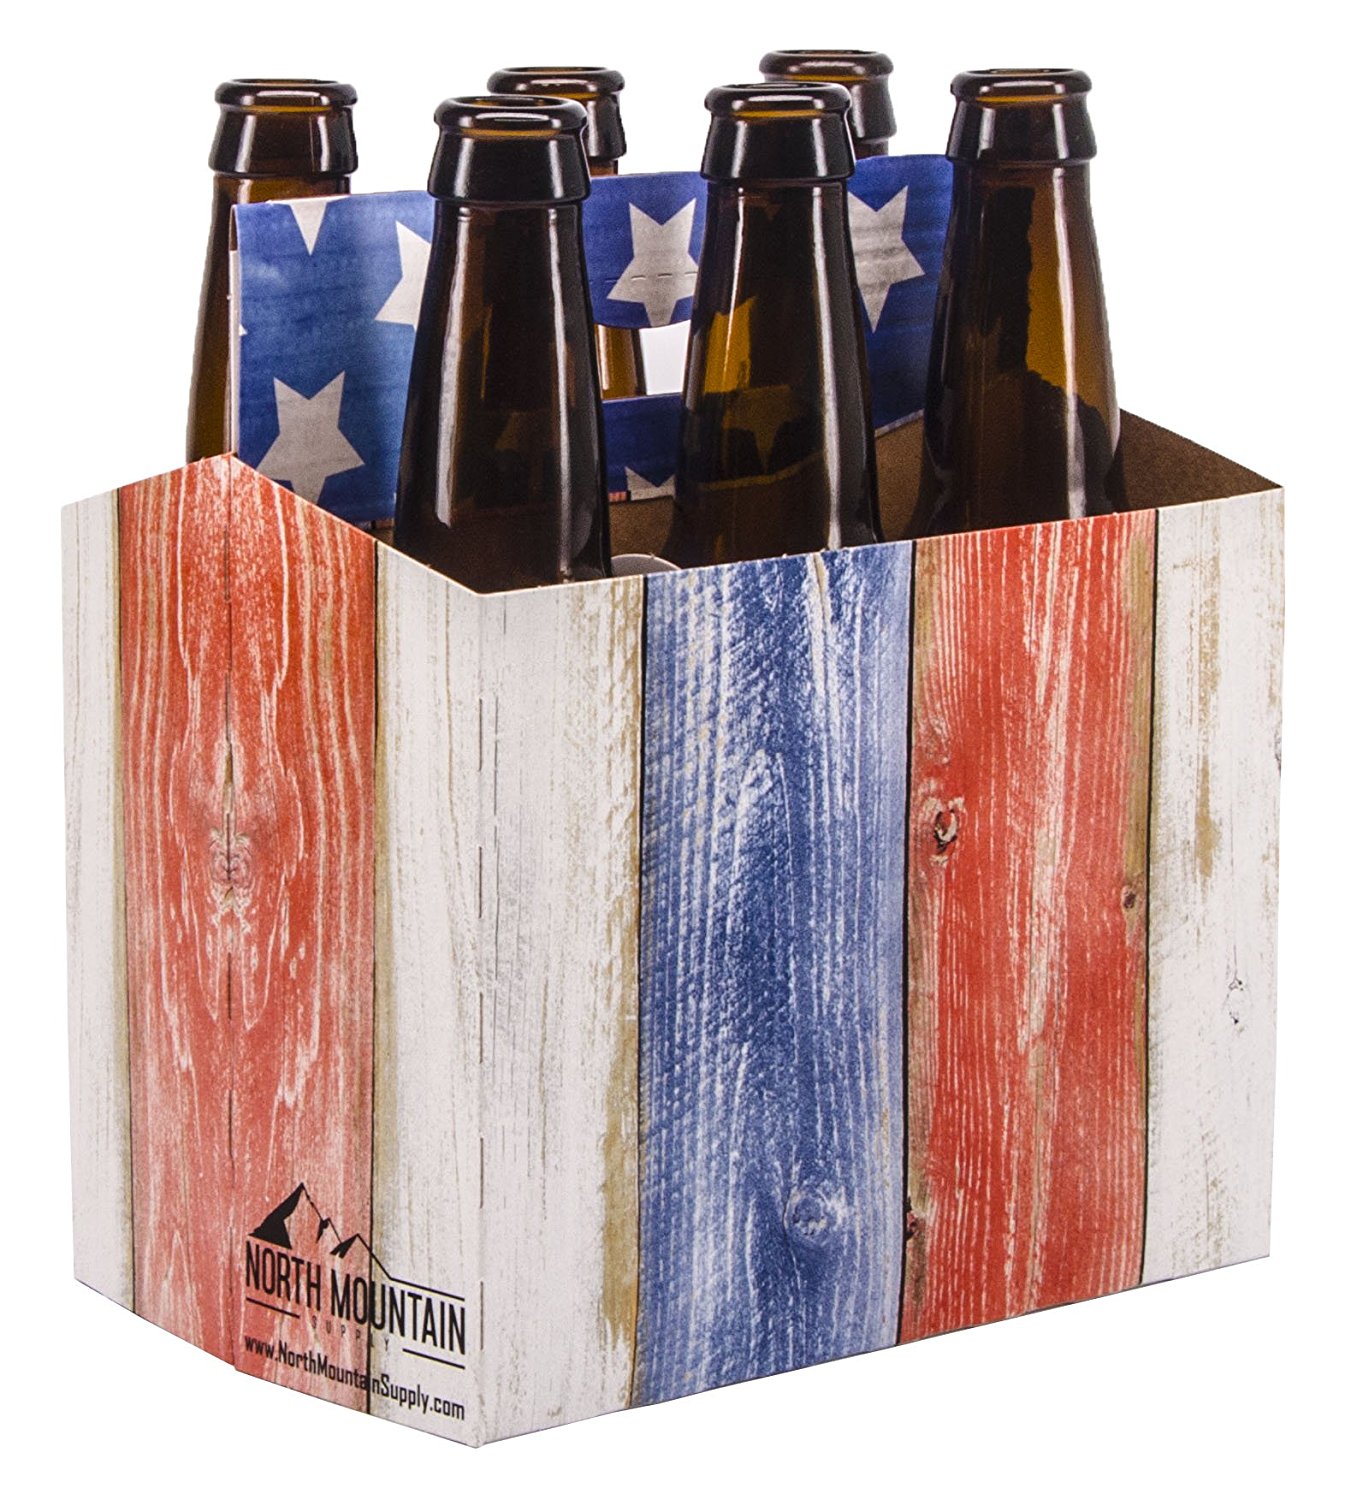 6 Pack Longneck Beer Bottle Carrier